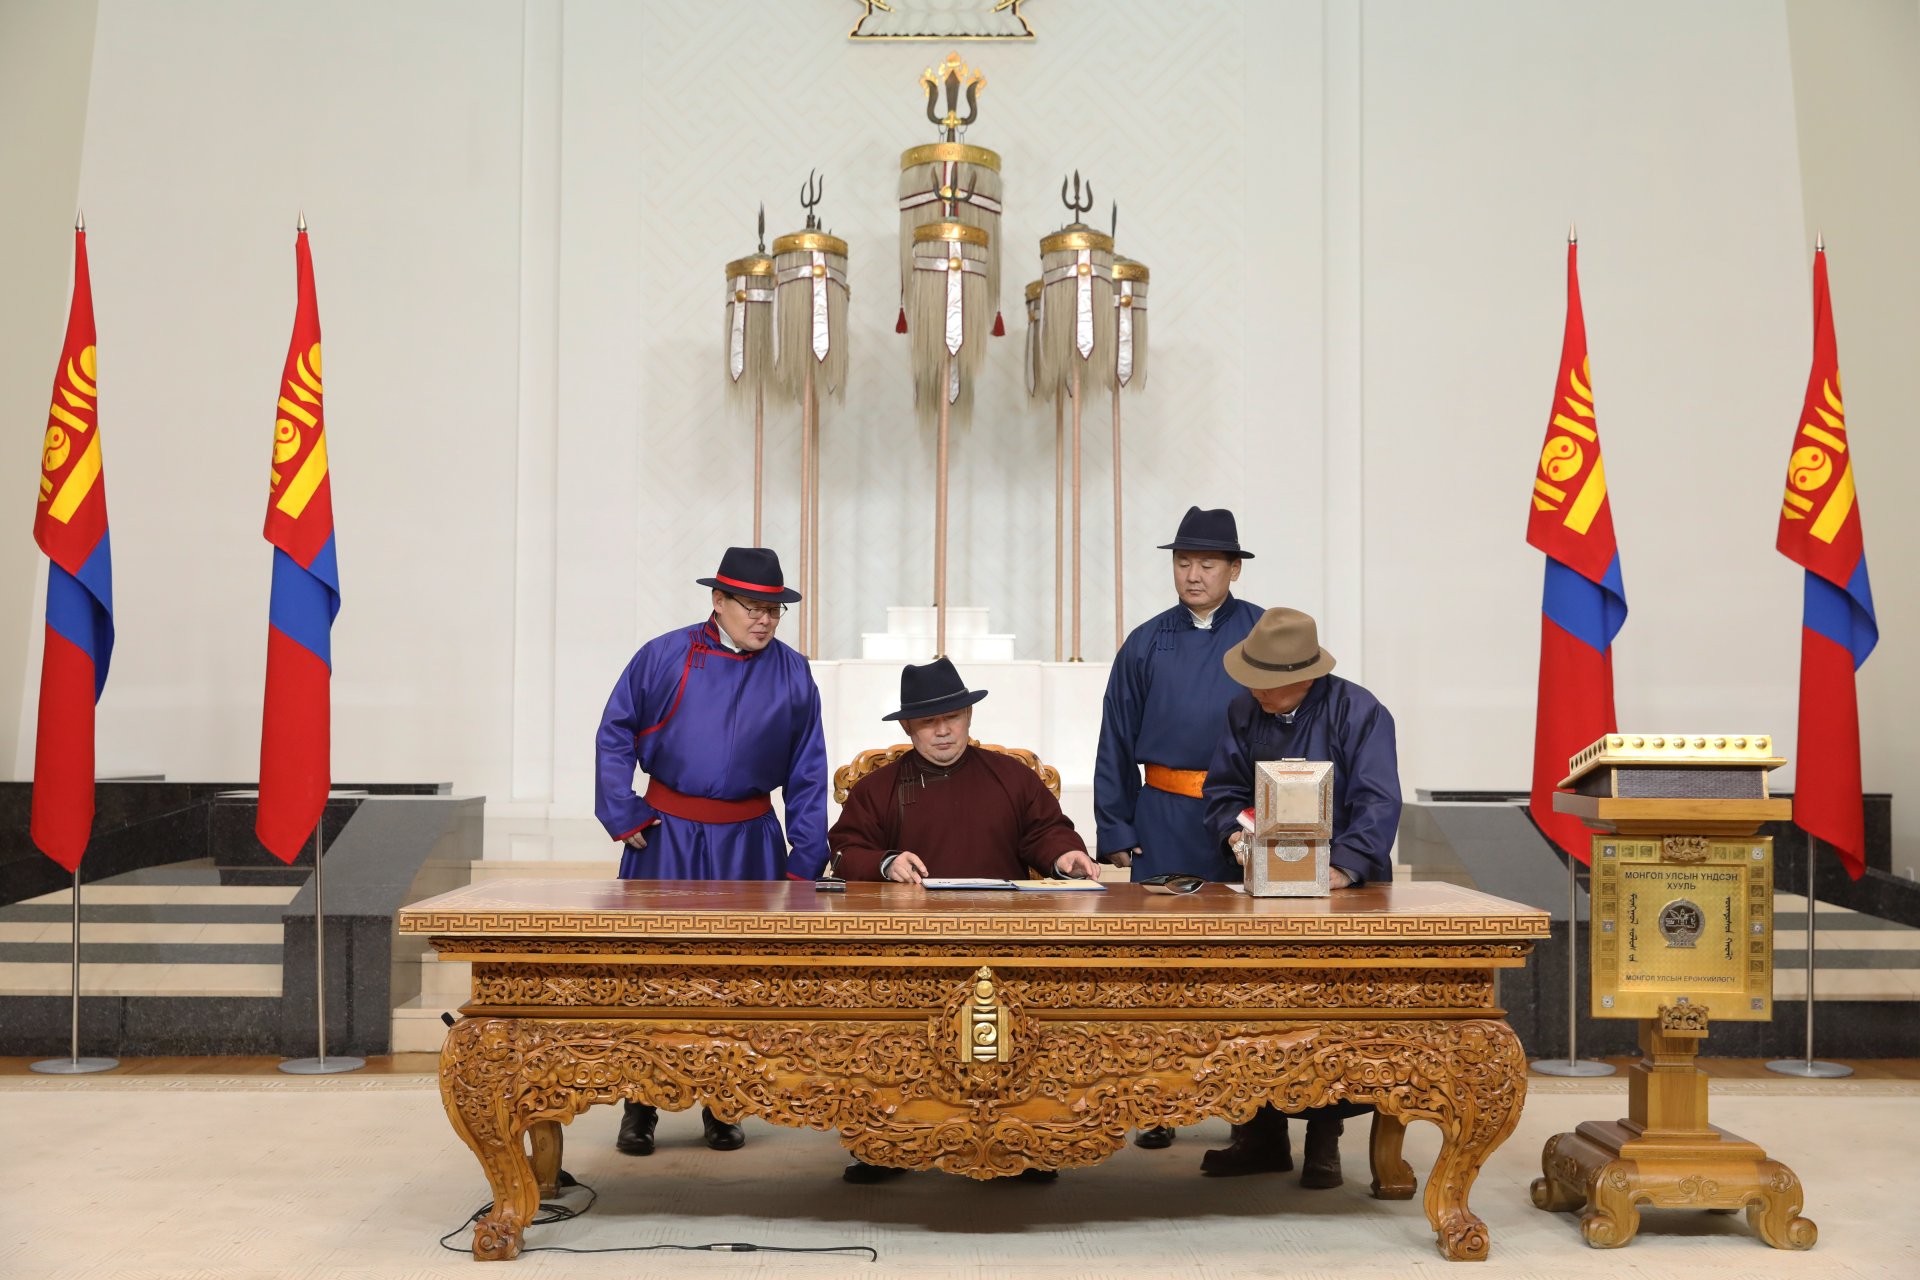 Монгол Улсын Үндсэн хуулийн нэмэлт өөрчлөлтийг өнөөдөр морин цагаас эхэлж мөрдөнө  